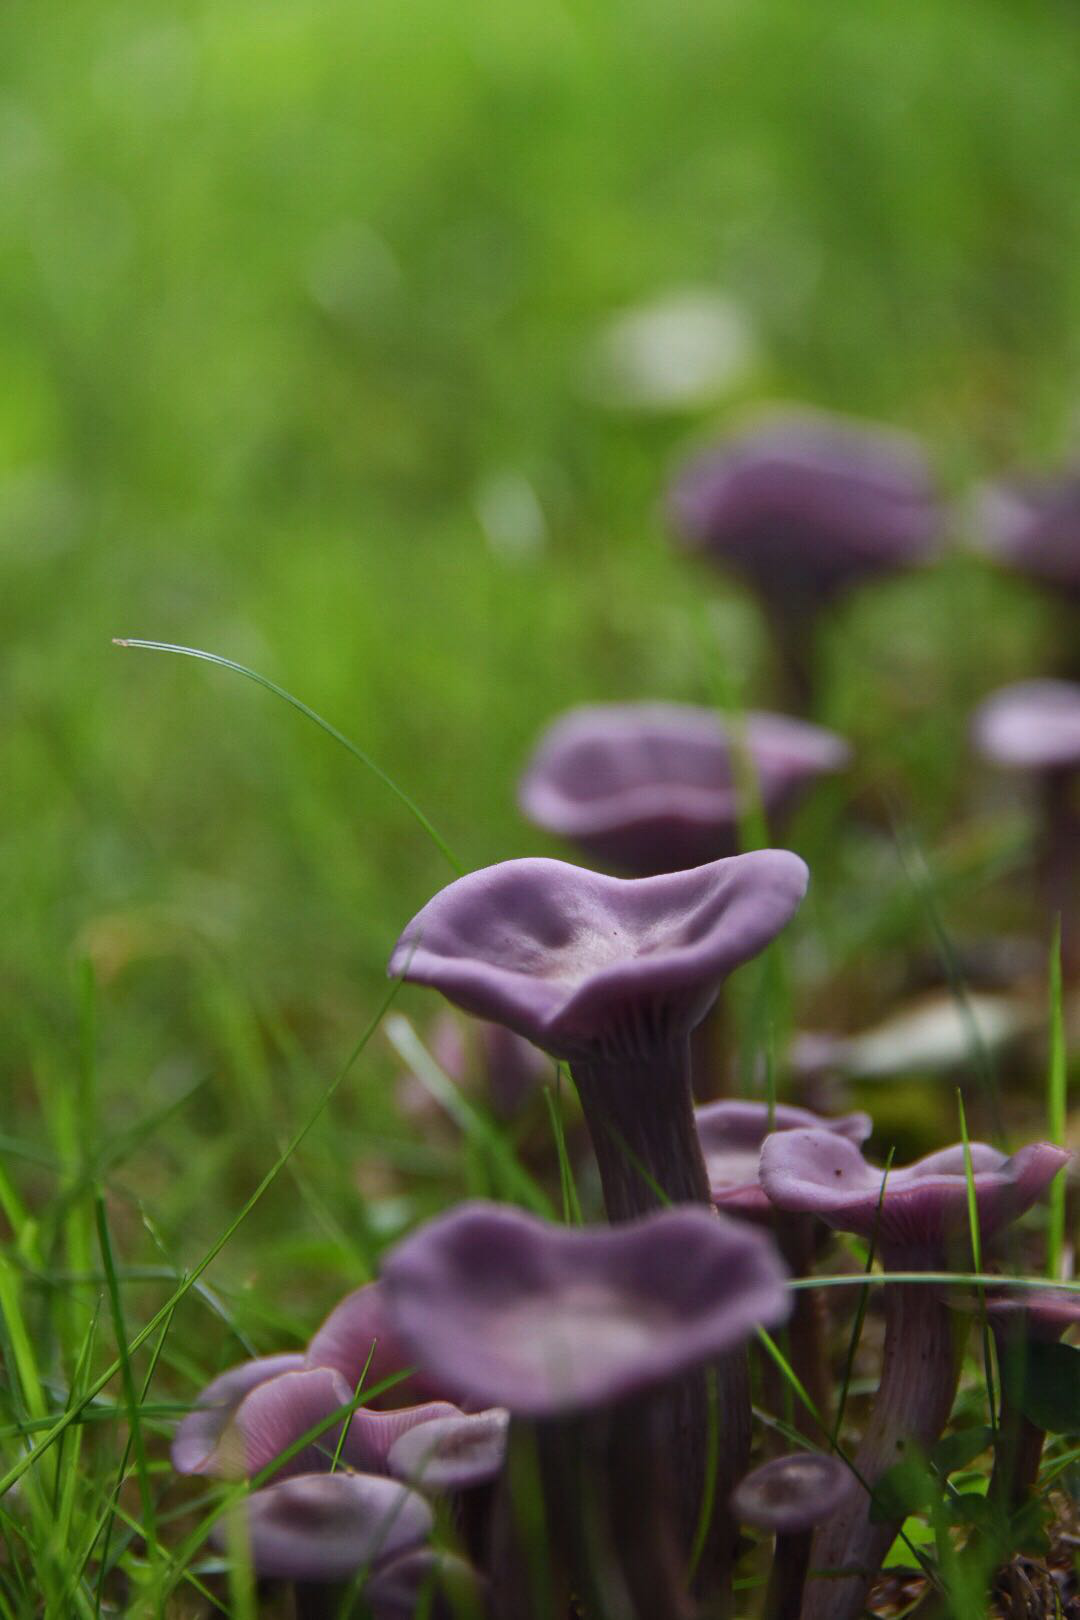 秋季紫色蘑菇 库存图片. 图片 包括有 结构树, 真菌, 森林地, 自治权, 森林, 蘑菇, 叶子, 野生生物 - 233605647